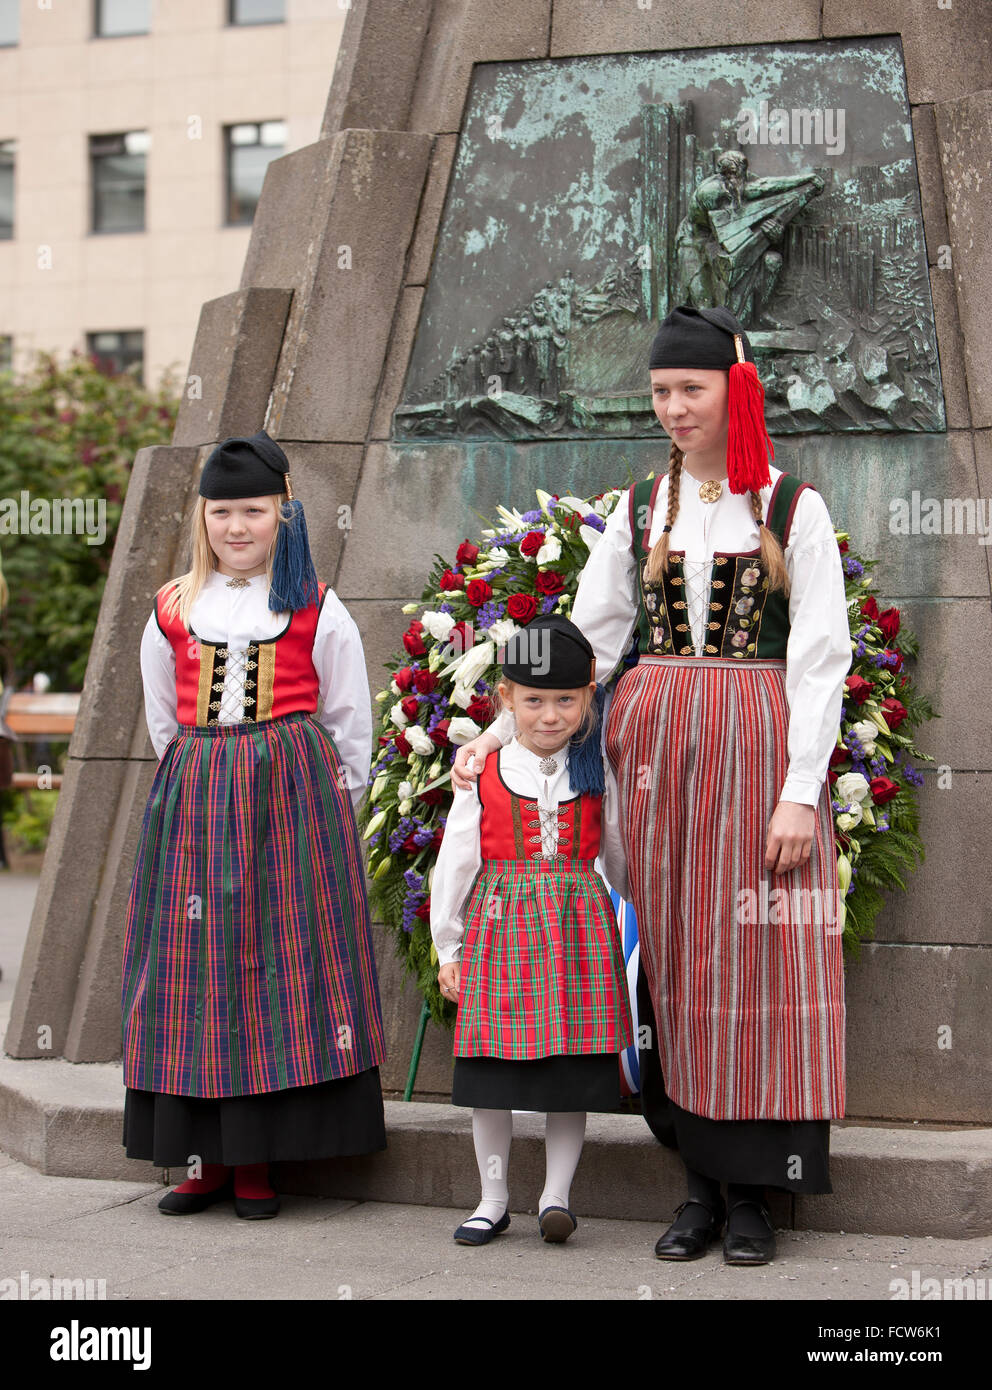 Madre y sus hijas vestidas en trajes tradicionales, el día de la independencia de Islandia, Reykjavik, Iceland Foto de stock